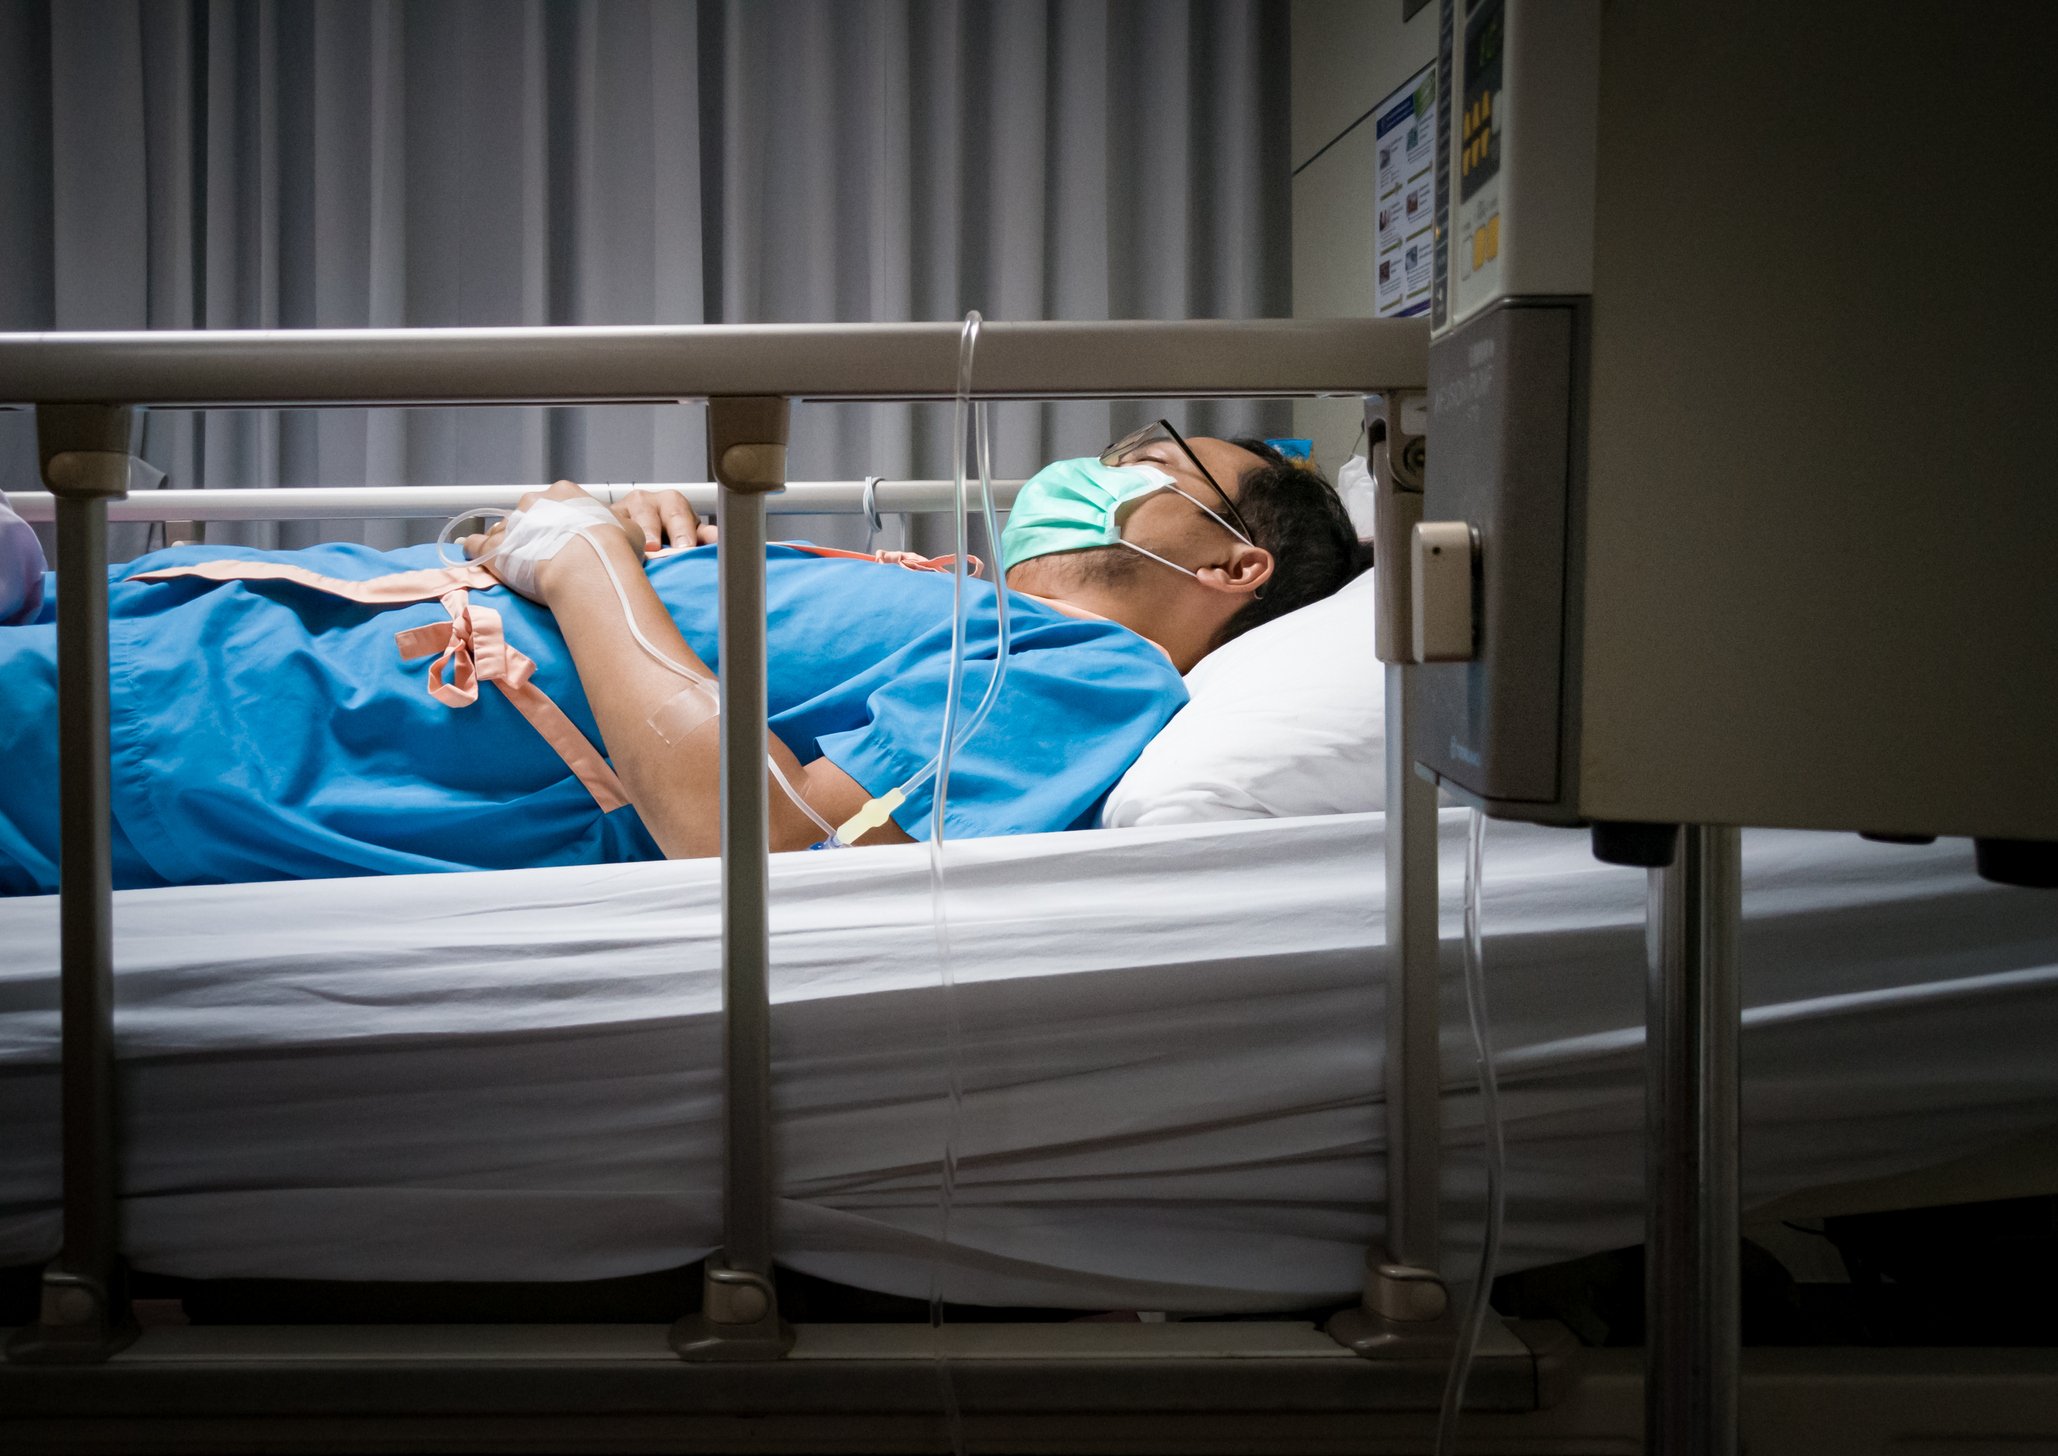 Dan s'était à nouveau blessé et était de retour sur son lit d'hôpital. | Photo : Getty Images